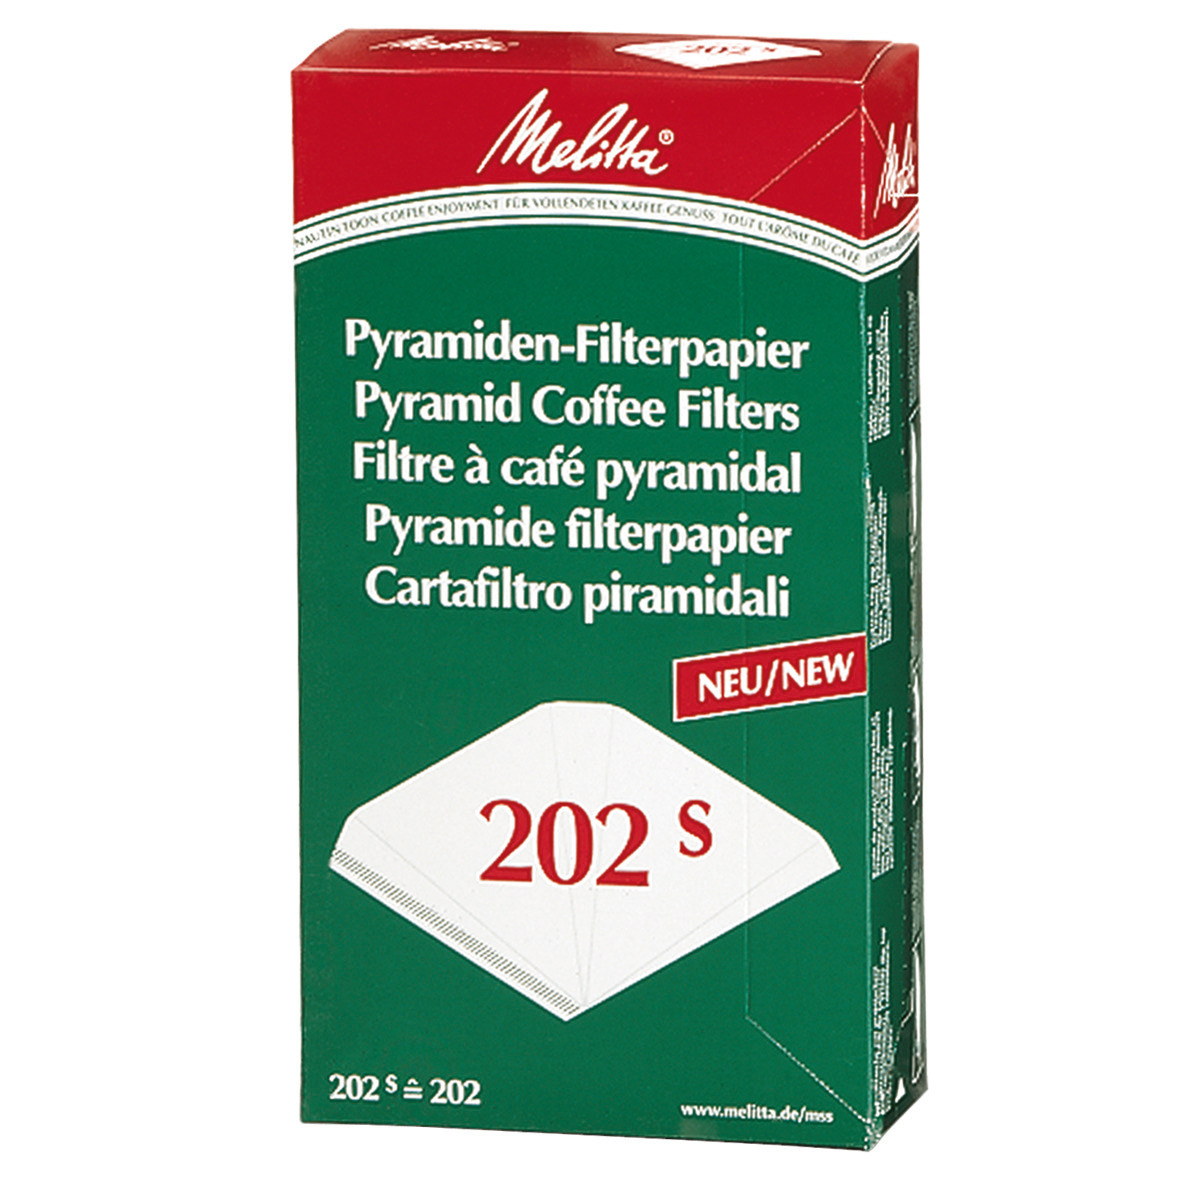 Pyramiden-Filterpapier für Kaffeemaschinen Pa SF 202 S, 100 ST